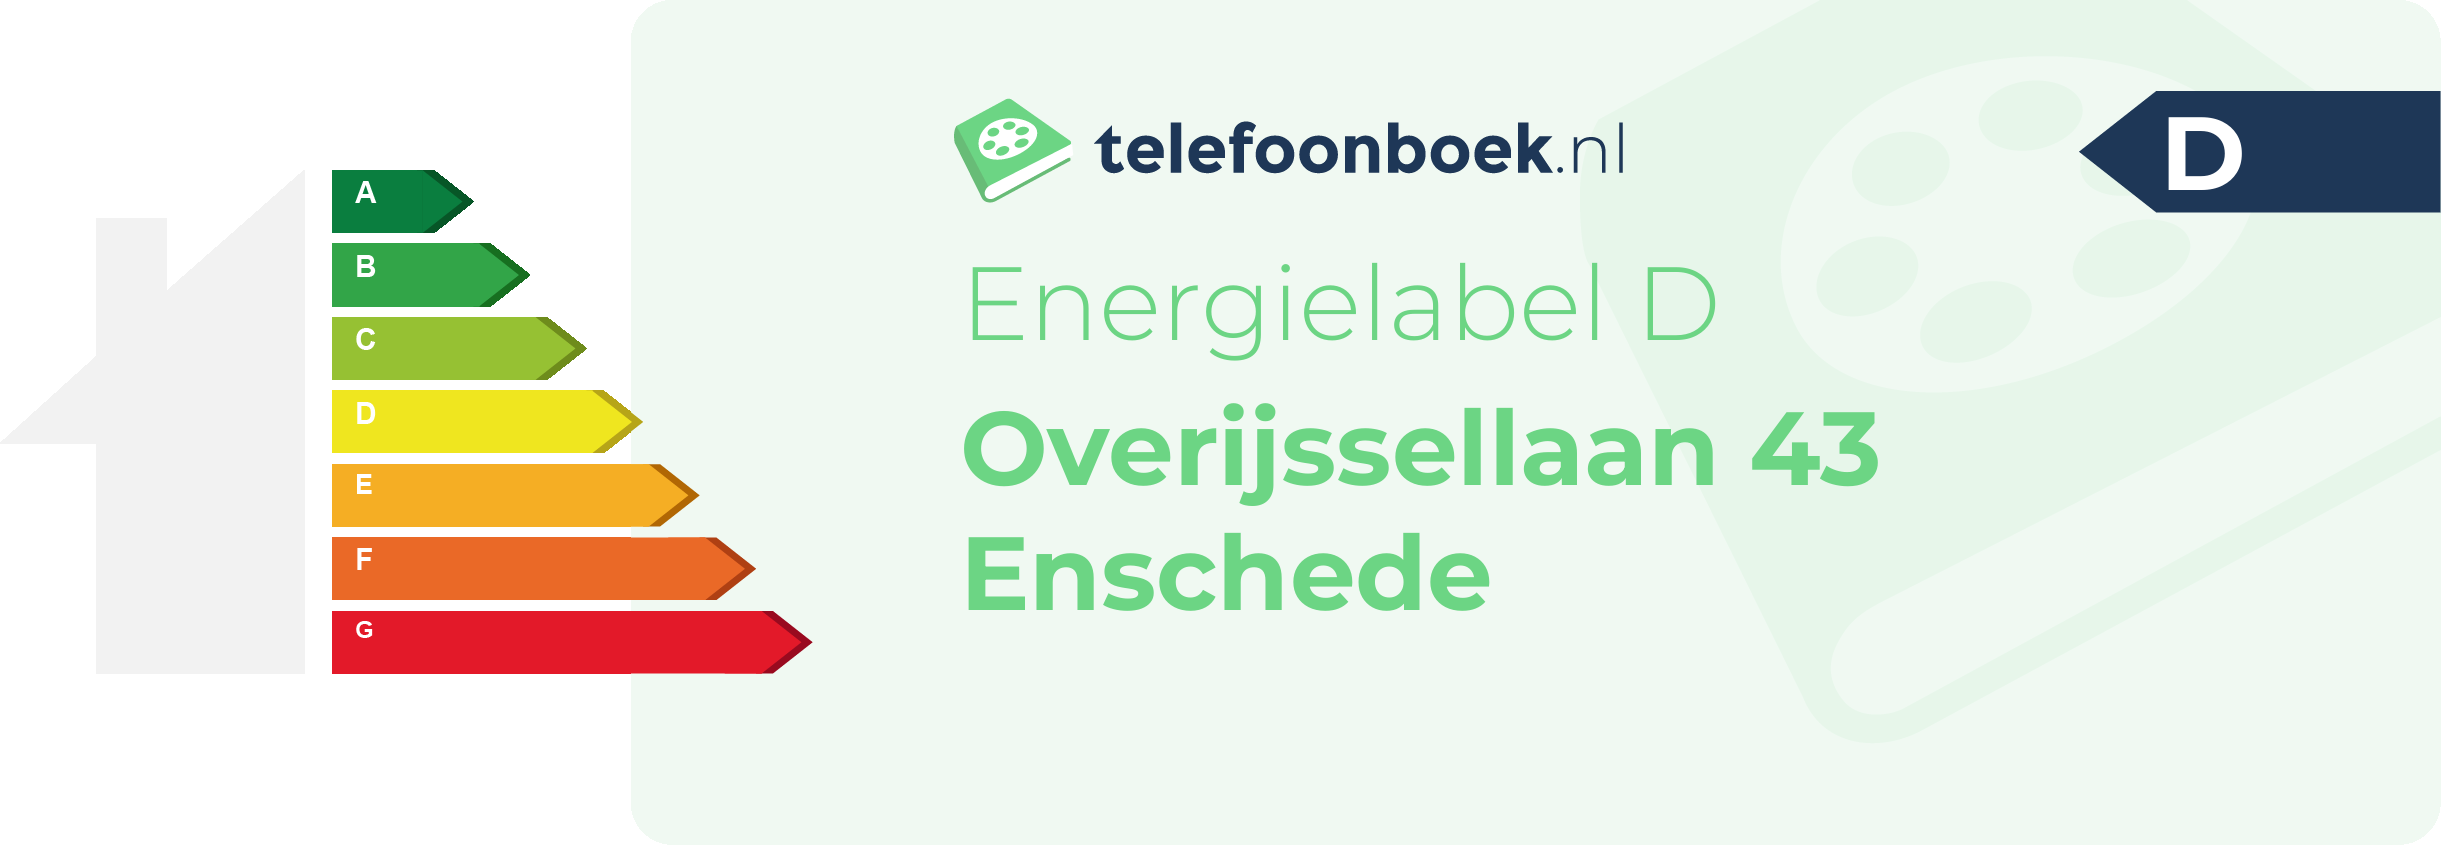 Energielabel Overijssellaan 43 Enschede